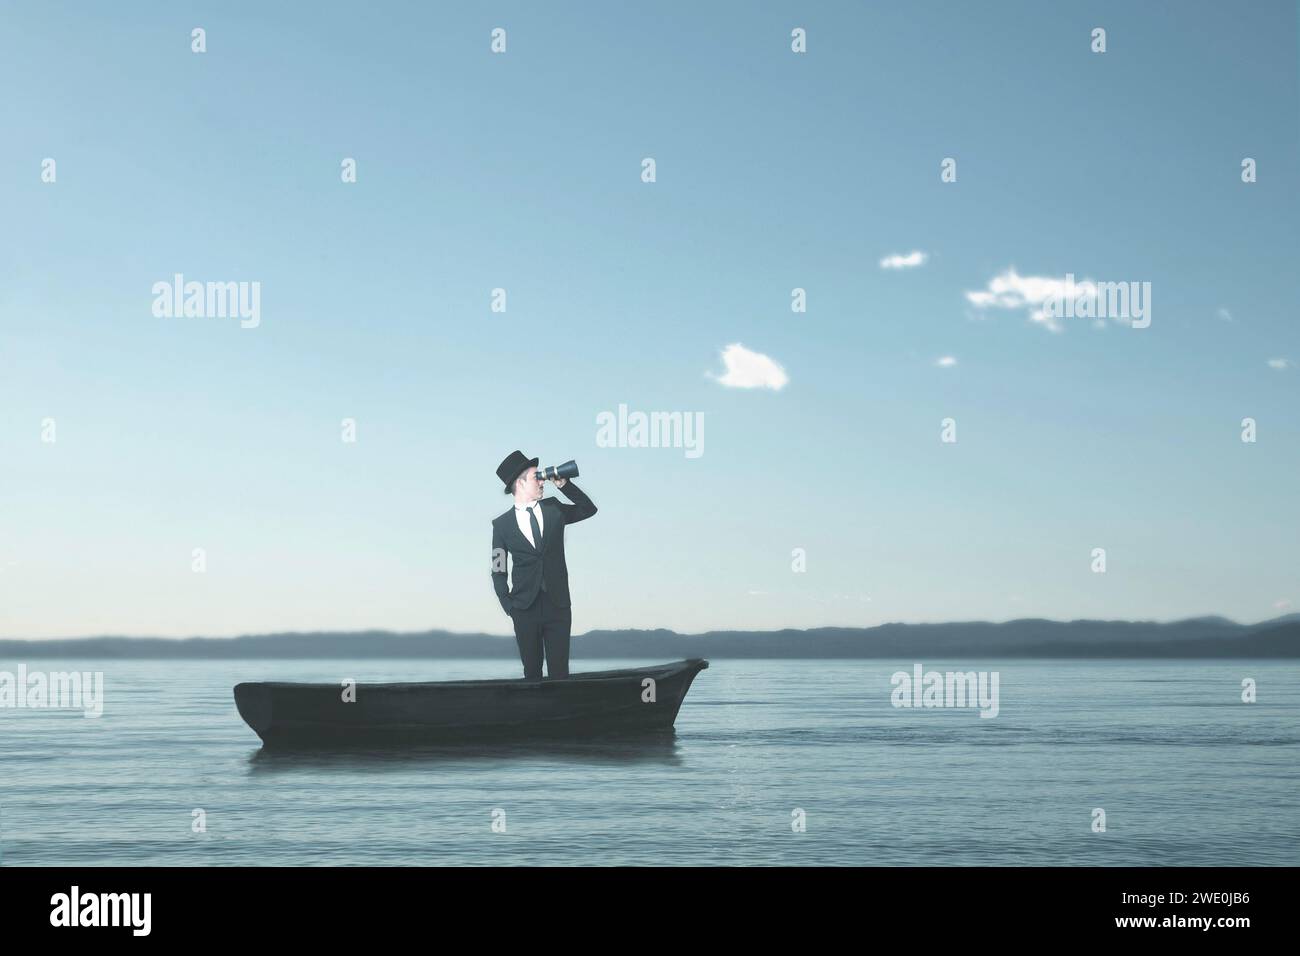 homme élégant navigue seul sur un petit bateau essayant avec un télescope de voir son propre destin, concept abstrait Banque D'Images